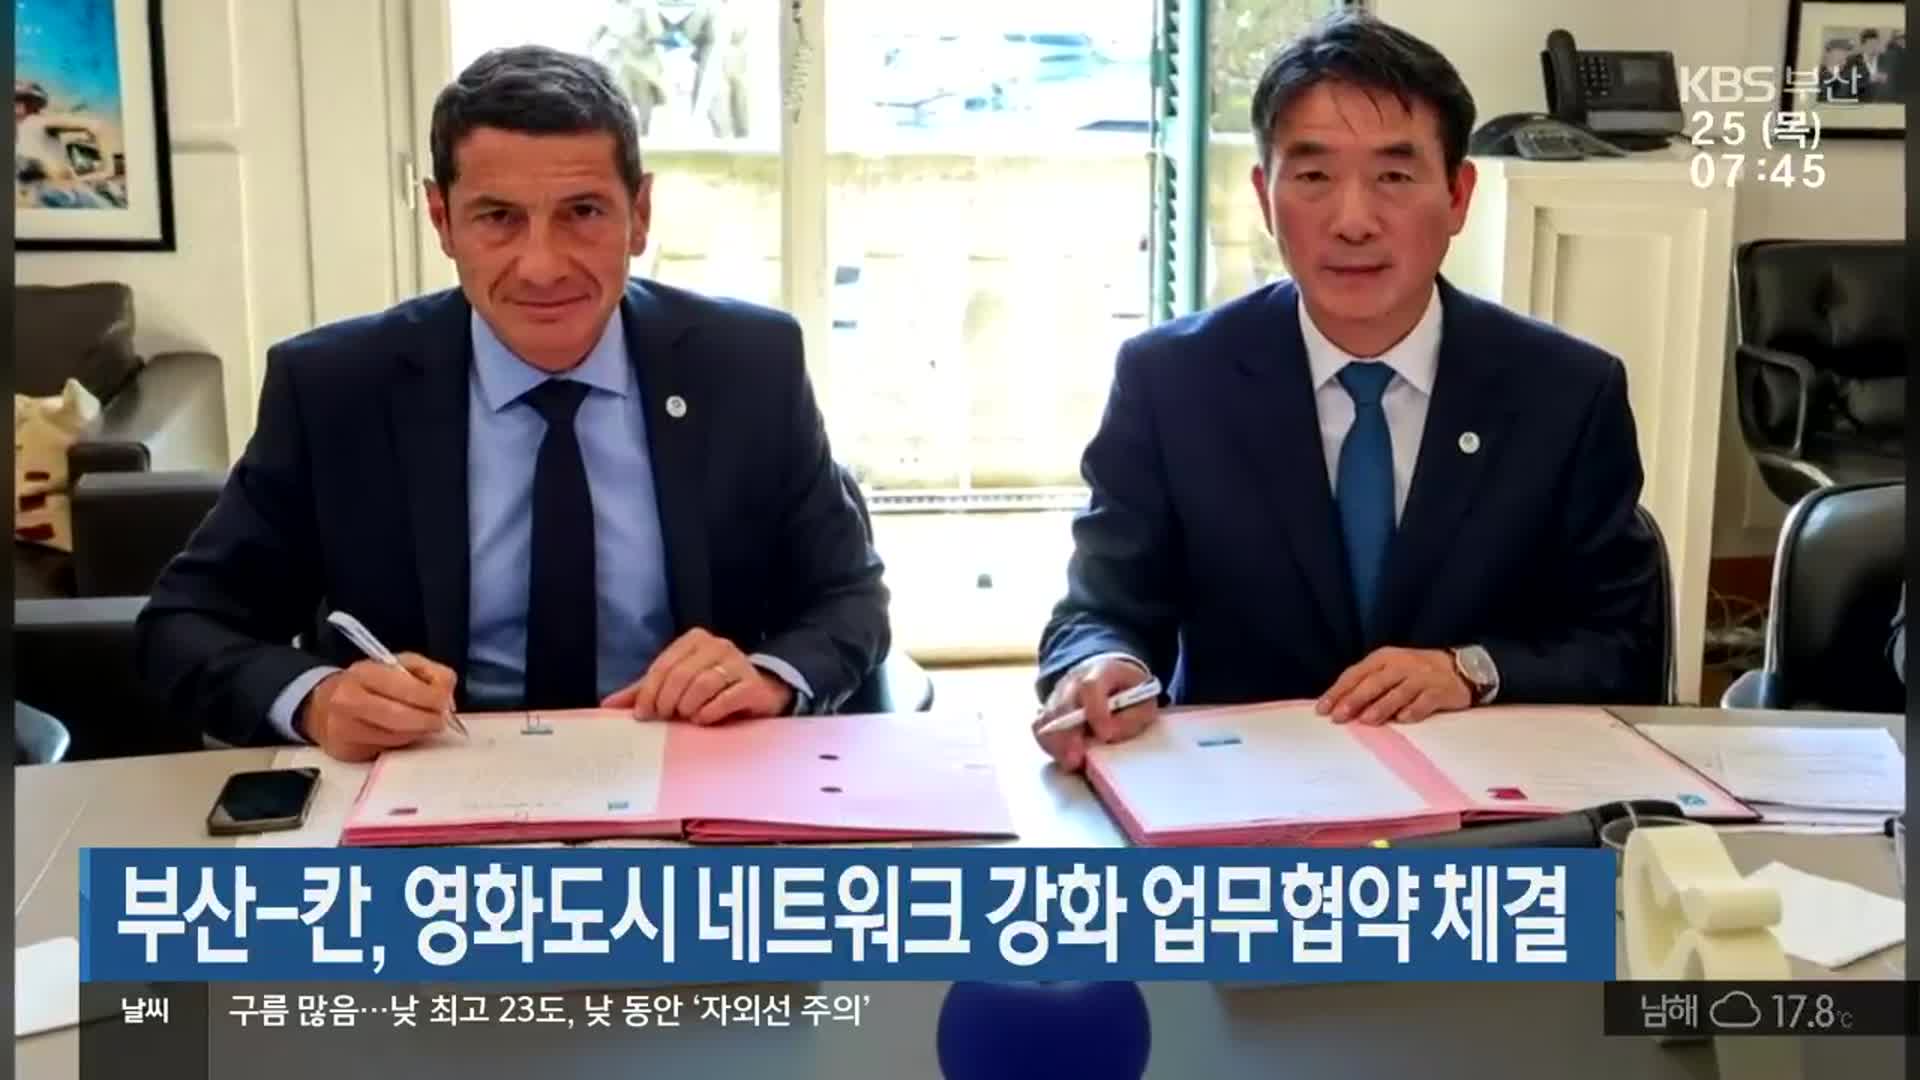 부산-칸, 영화도시 네트워크 강화 업무협약 체결